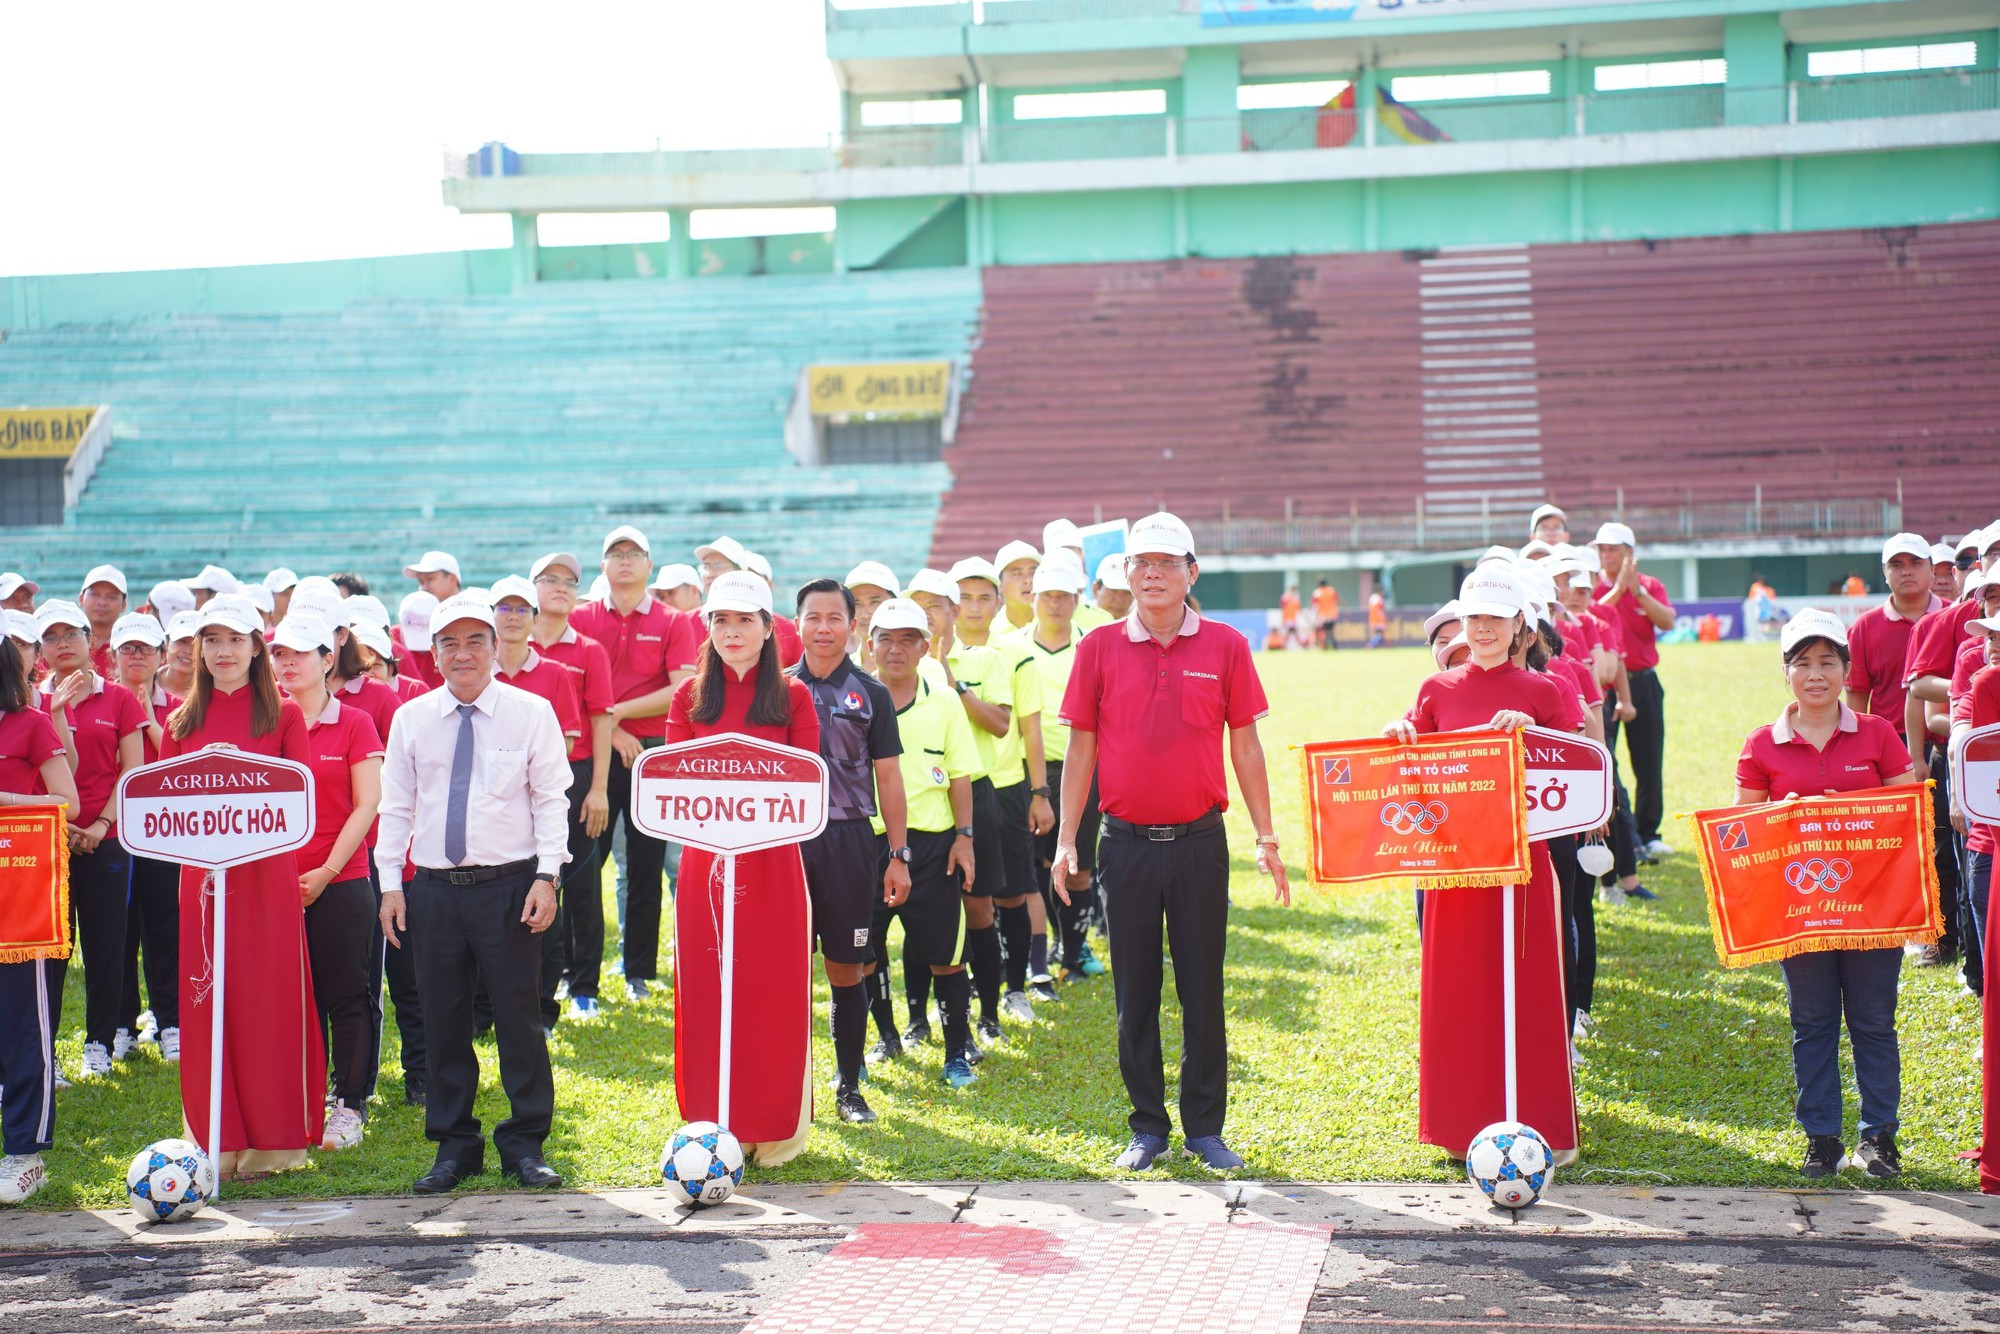 Khai mạc Hội thao Agribank chi nhánh tỉnh Long An lần thứ XIX năm 2022 - Ảnh 2.